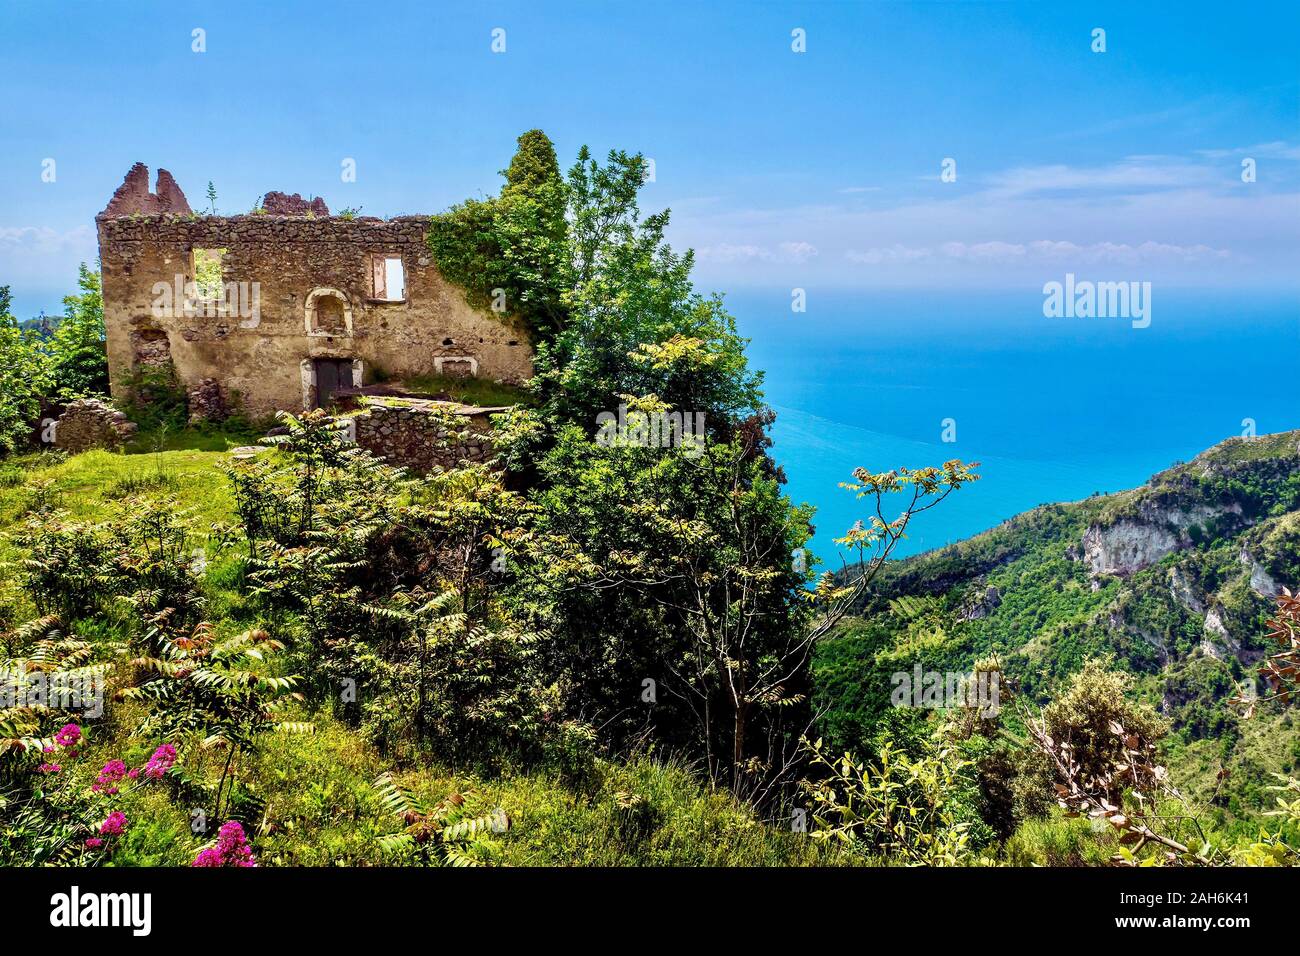 L'évolution de la situation. Une vieille maison traditionnelle avec une vue spectaculaire sur la mer sur la côte amalfitaine est désormais abandonnée et en ruine. Banque D'Images